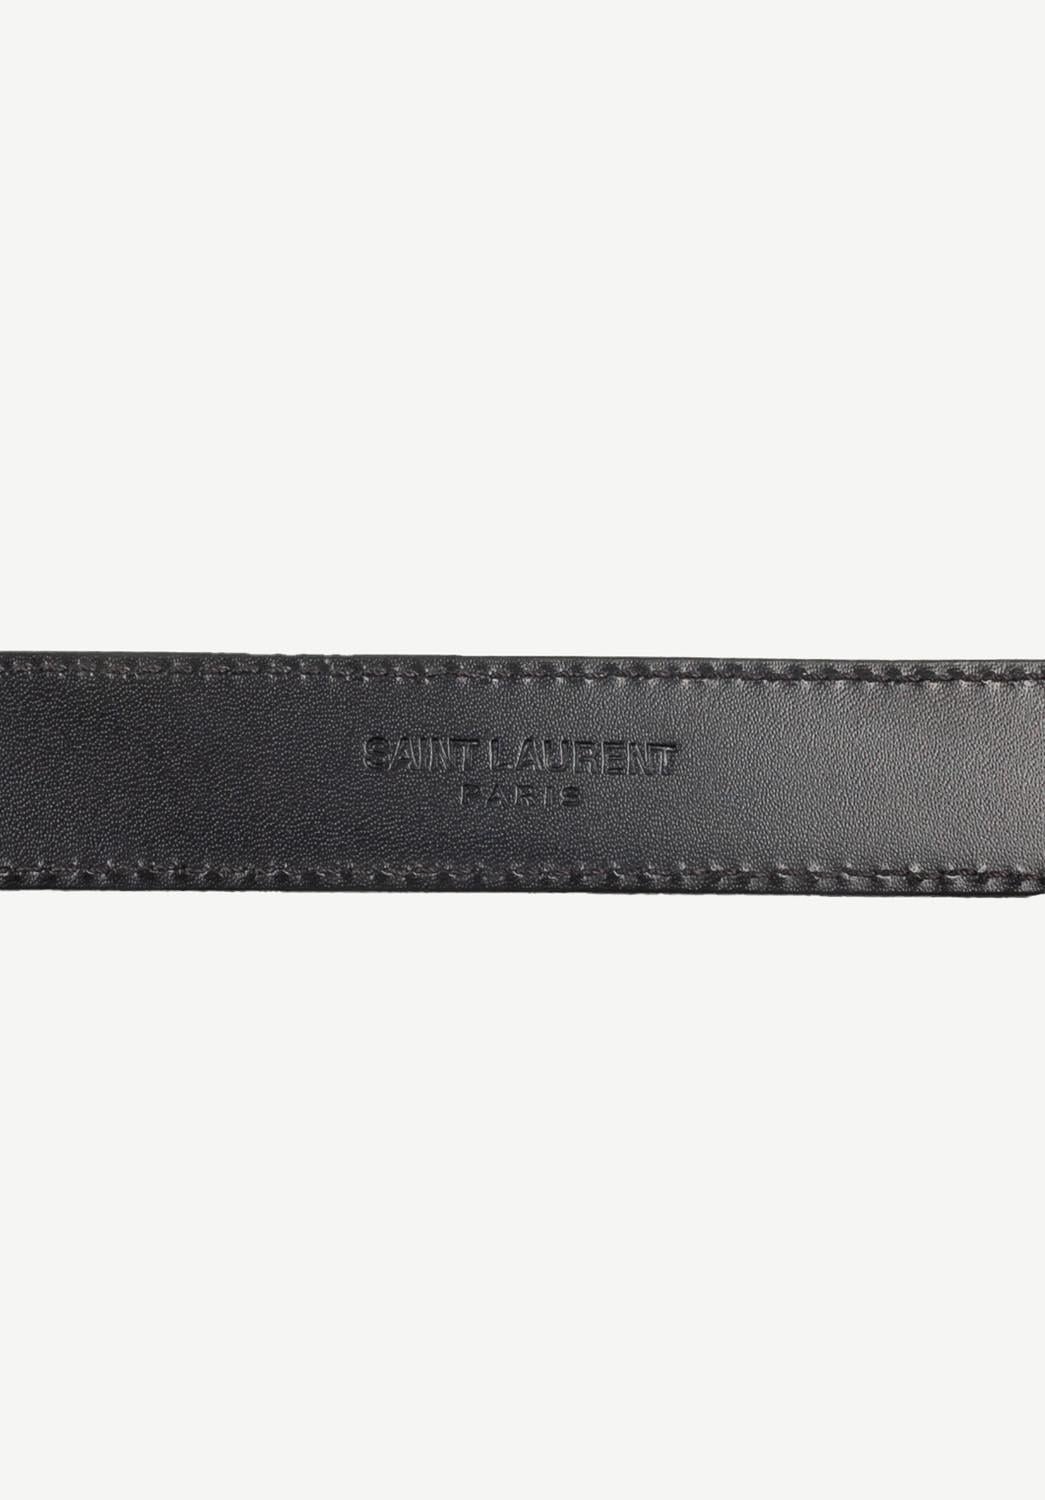 Saint Laurent Paris Men 3 Passants belt 2cm width, Size 100, S630  For Sale 2